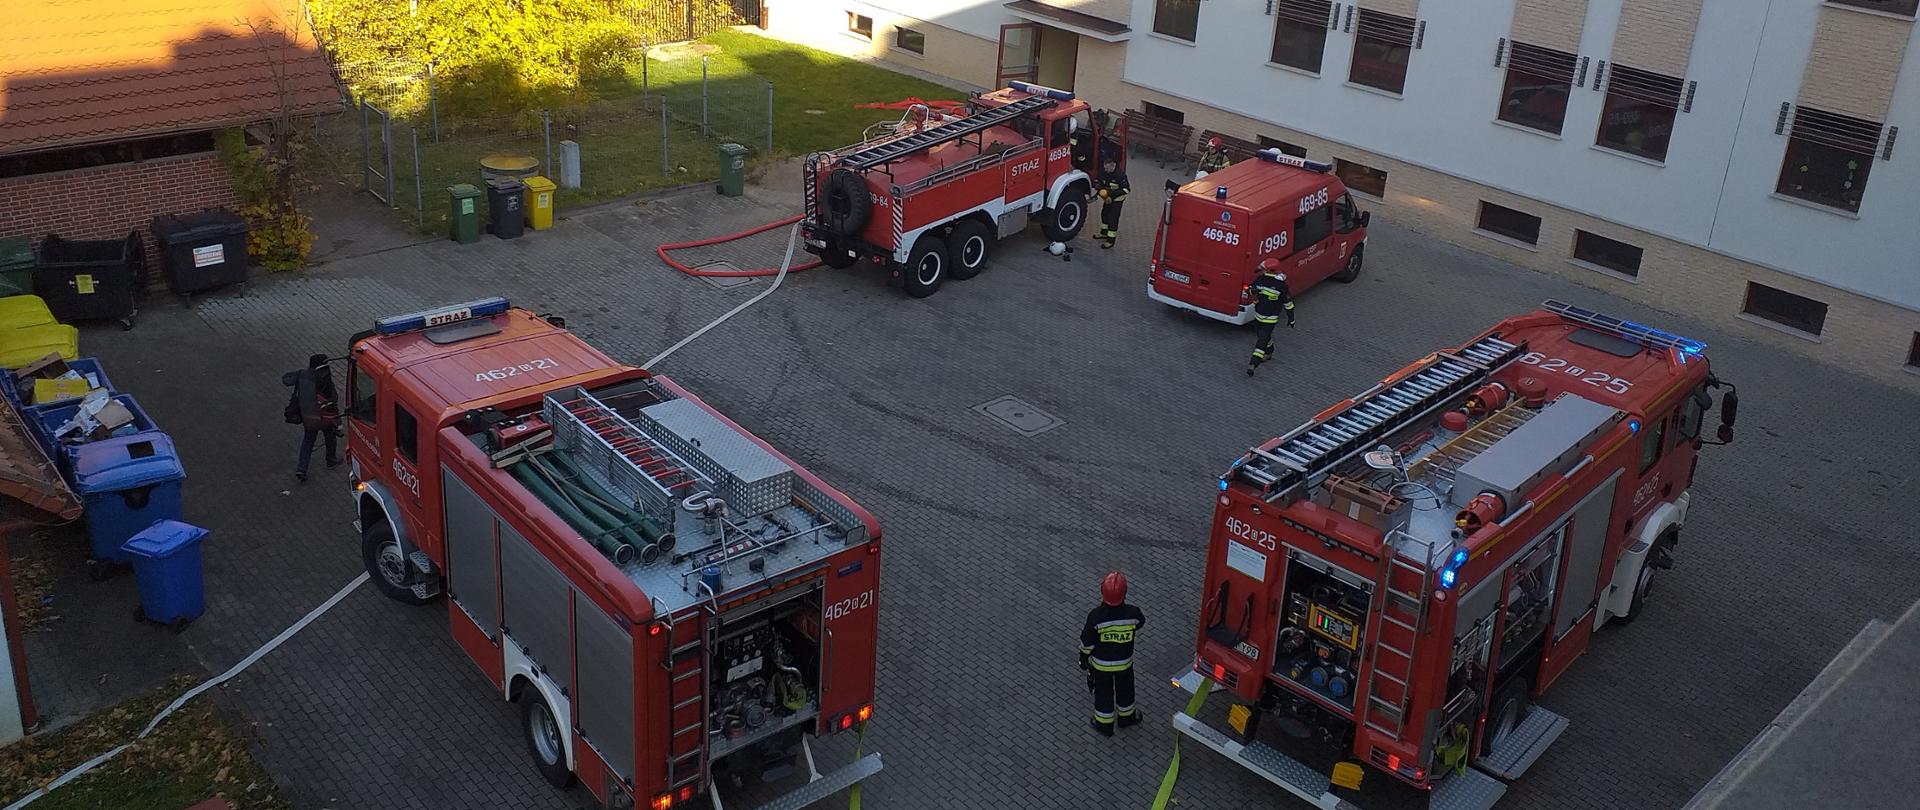 Widok na plac przy Wojewódzkim Centrum Psychiatrii Długoterminowej w Stroniu Śląskim. Na placu stoją cztery samochody pożarnicze oraz strażacy przygotowywujący się do ćwiczeń.